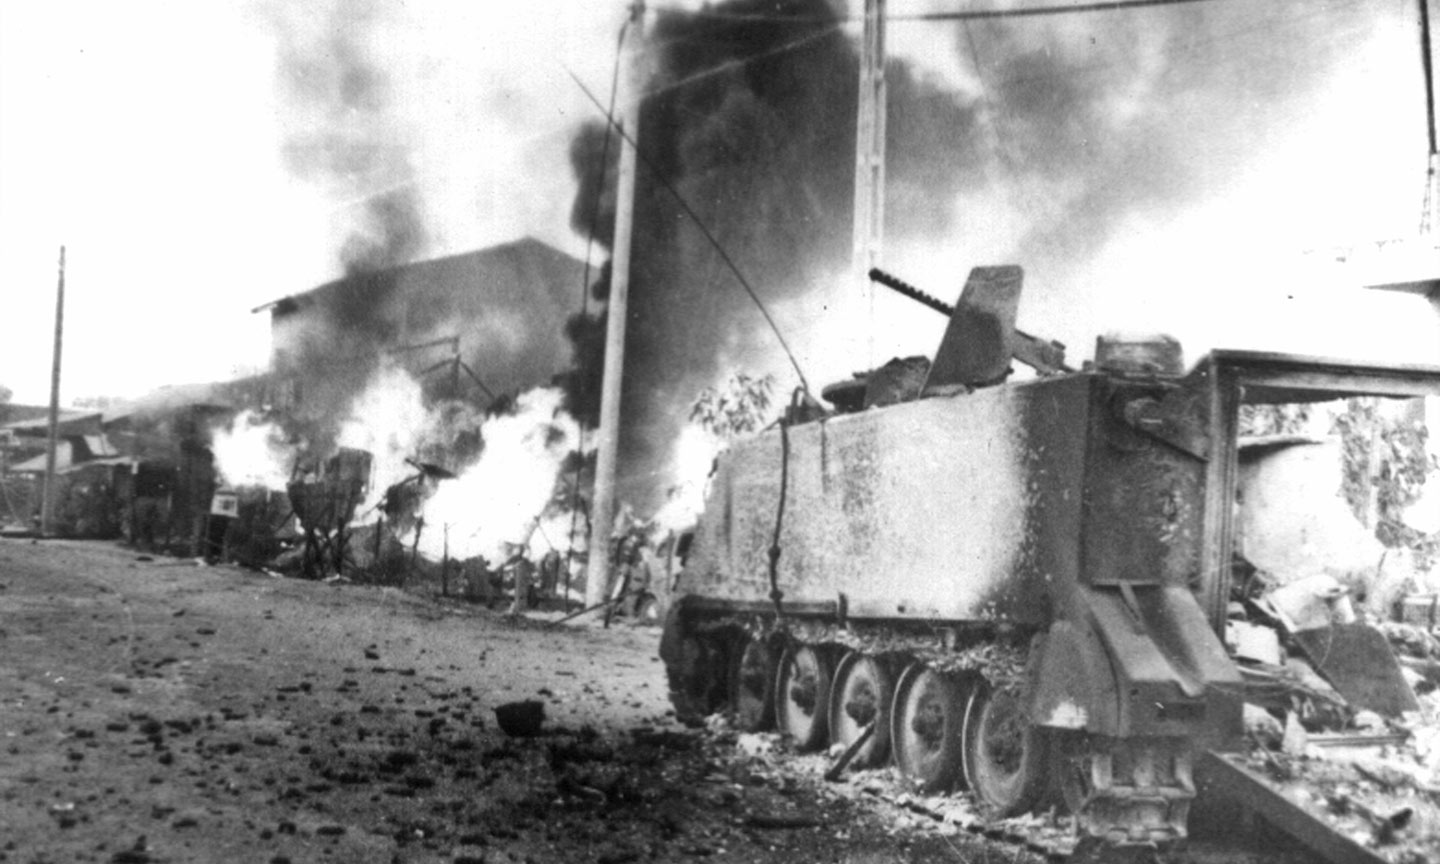 Xác xe tăng M113 Mỹ bị ta bắn cháy, bỏ xác trải dài theo đường Nguyễn Tri Phương, nay là đường Ấp Bắc trong cuộc tiến công và nổi dậy Xuân Mậu Thân 1968. Ảnh: Vũ Hoài Nam